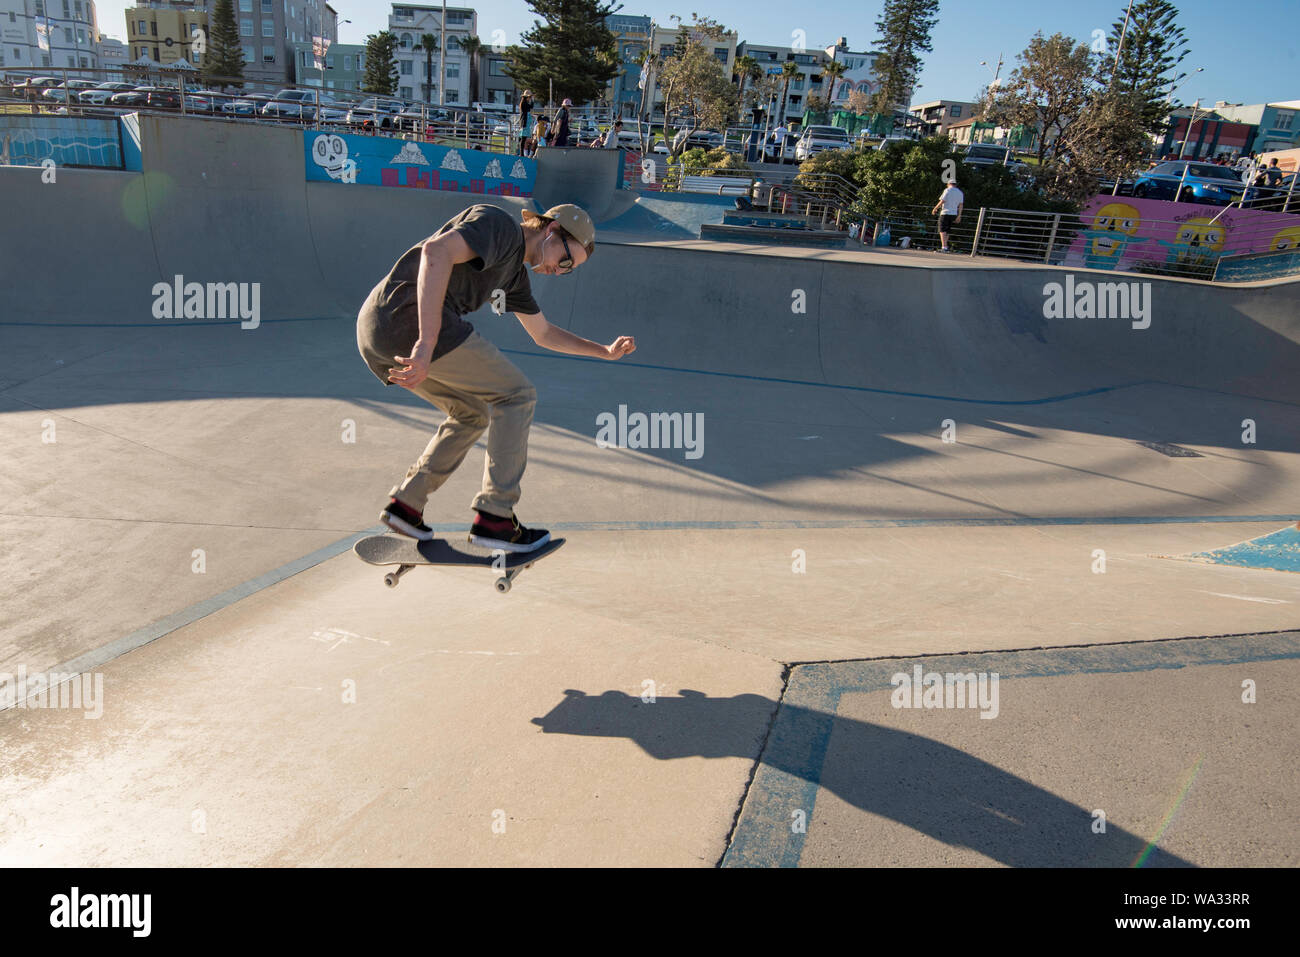 In den späten Nachmittag Sonne am Bondi Beach Skate Park eine junge männliche Skateboarder erhält etwas Luft. Stockfoto